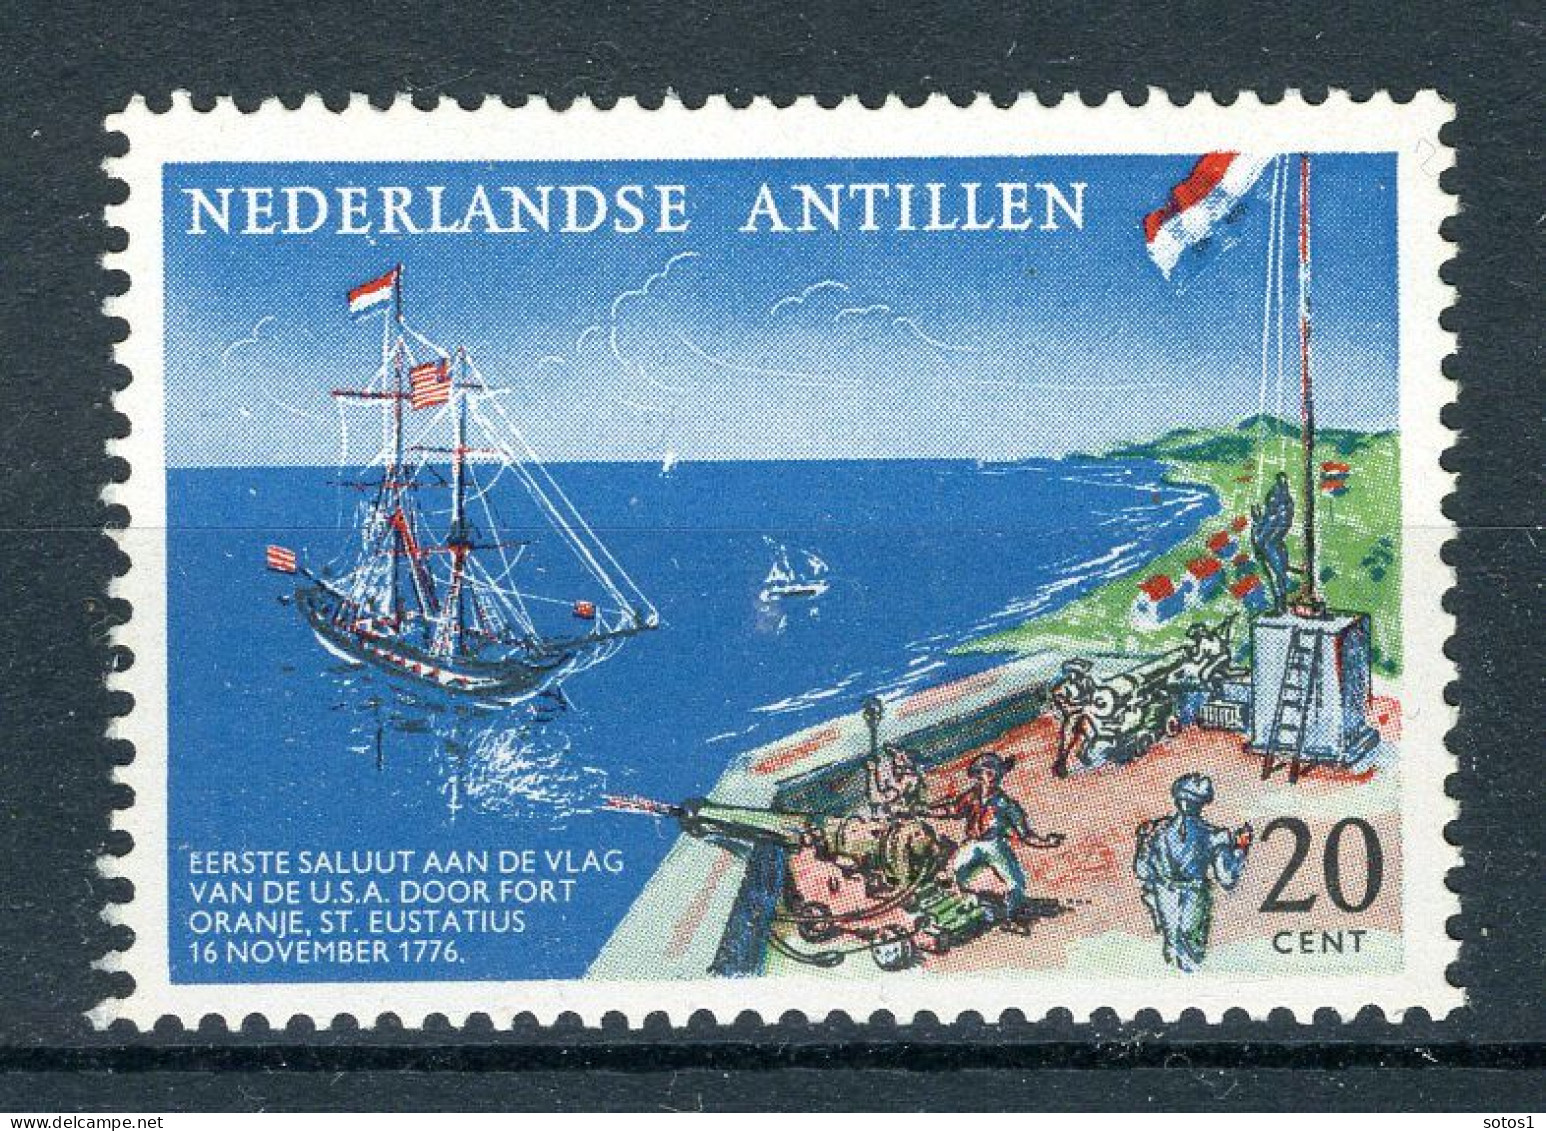 NL. ANTILLEN 322 MNH 1961 - Herdenkingszegel. - Curacao, Netherlands Antilles, Aruba